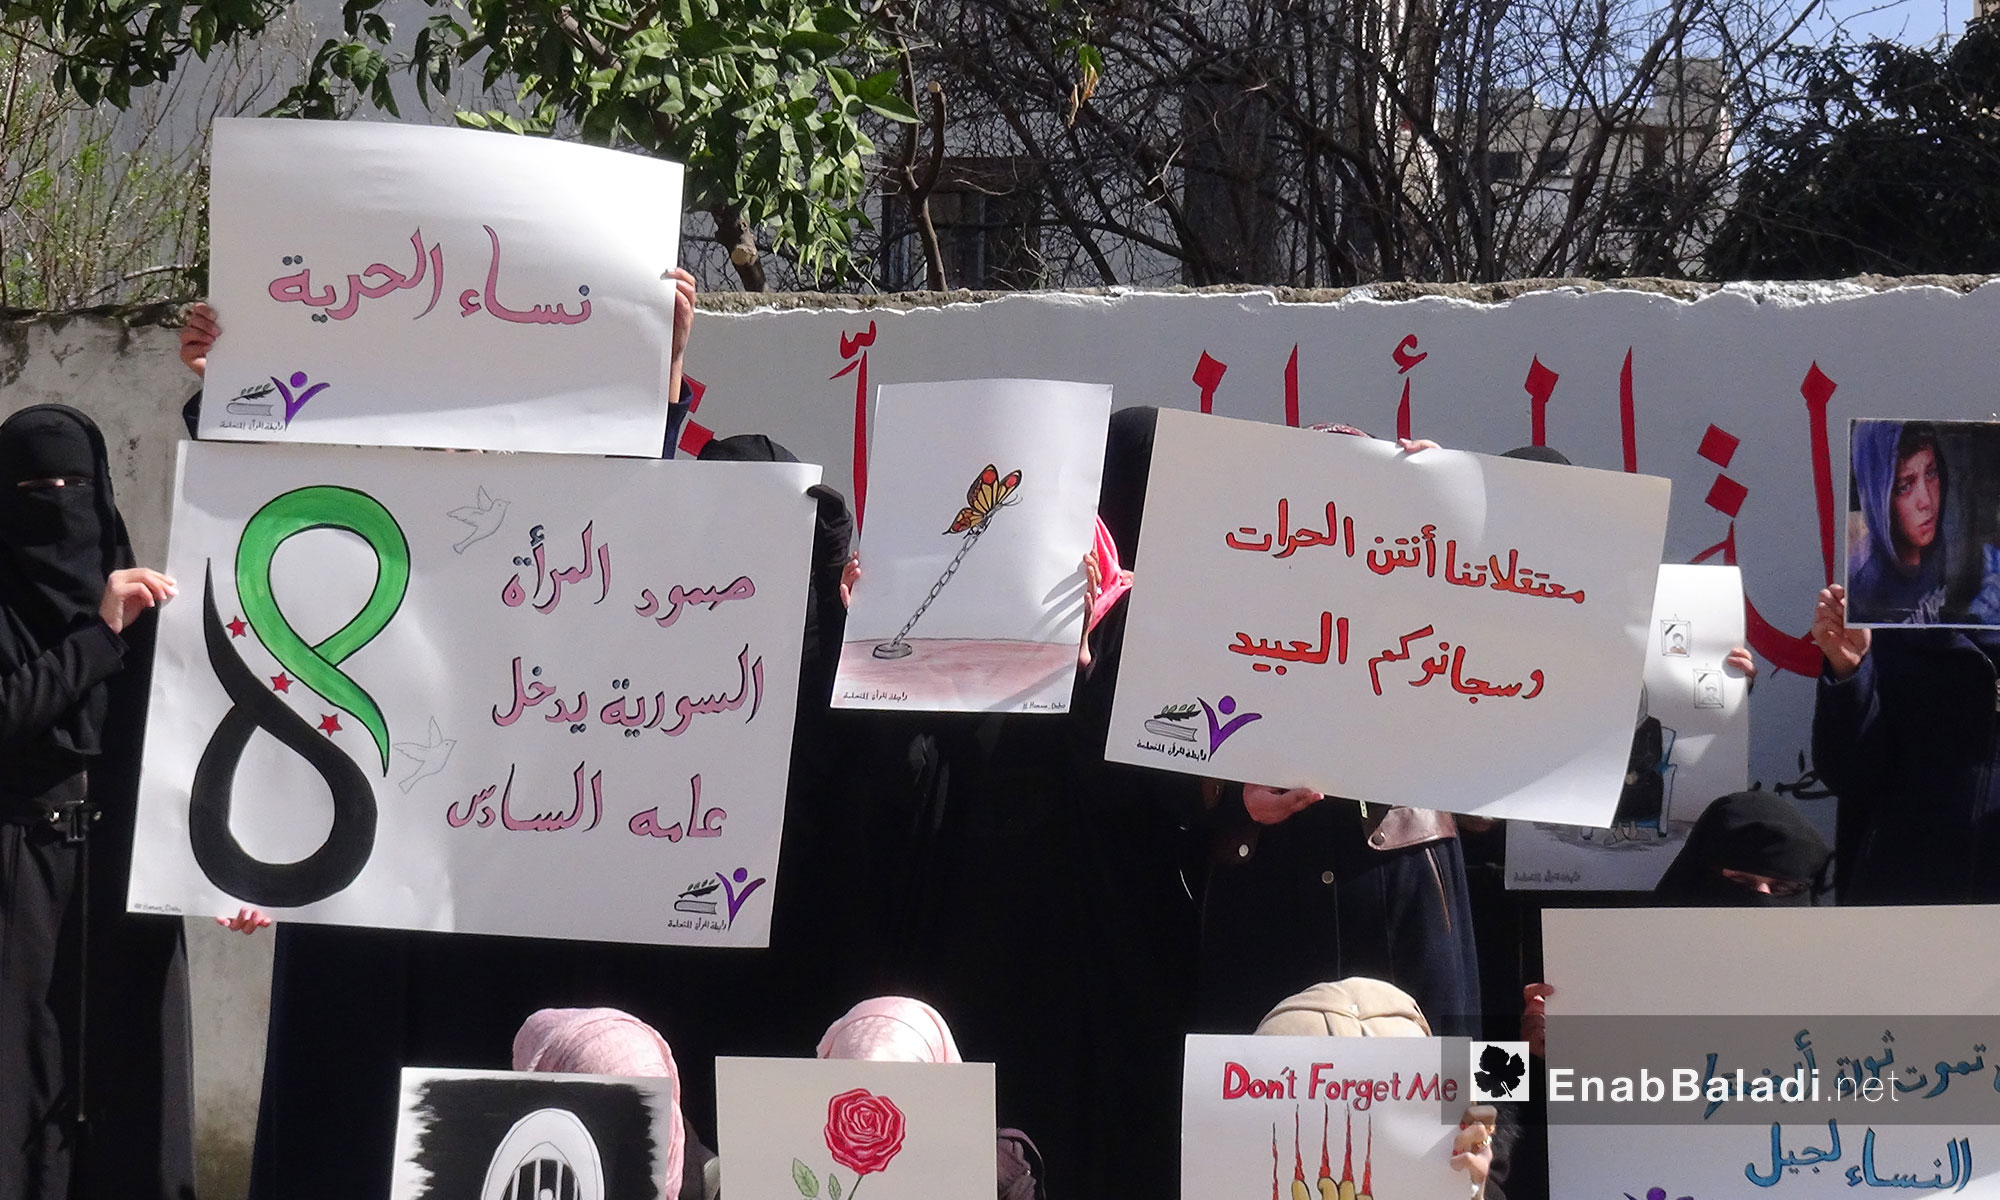 وقفة تضامنية للتذكير بالمعتقلات في سجون النظام  في يوم المرأة العالمي - "رابطة المرأة المتعلمة" إدلب - 8 آذار 2017 (عنب بلدي)